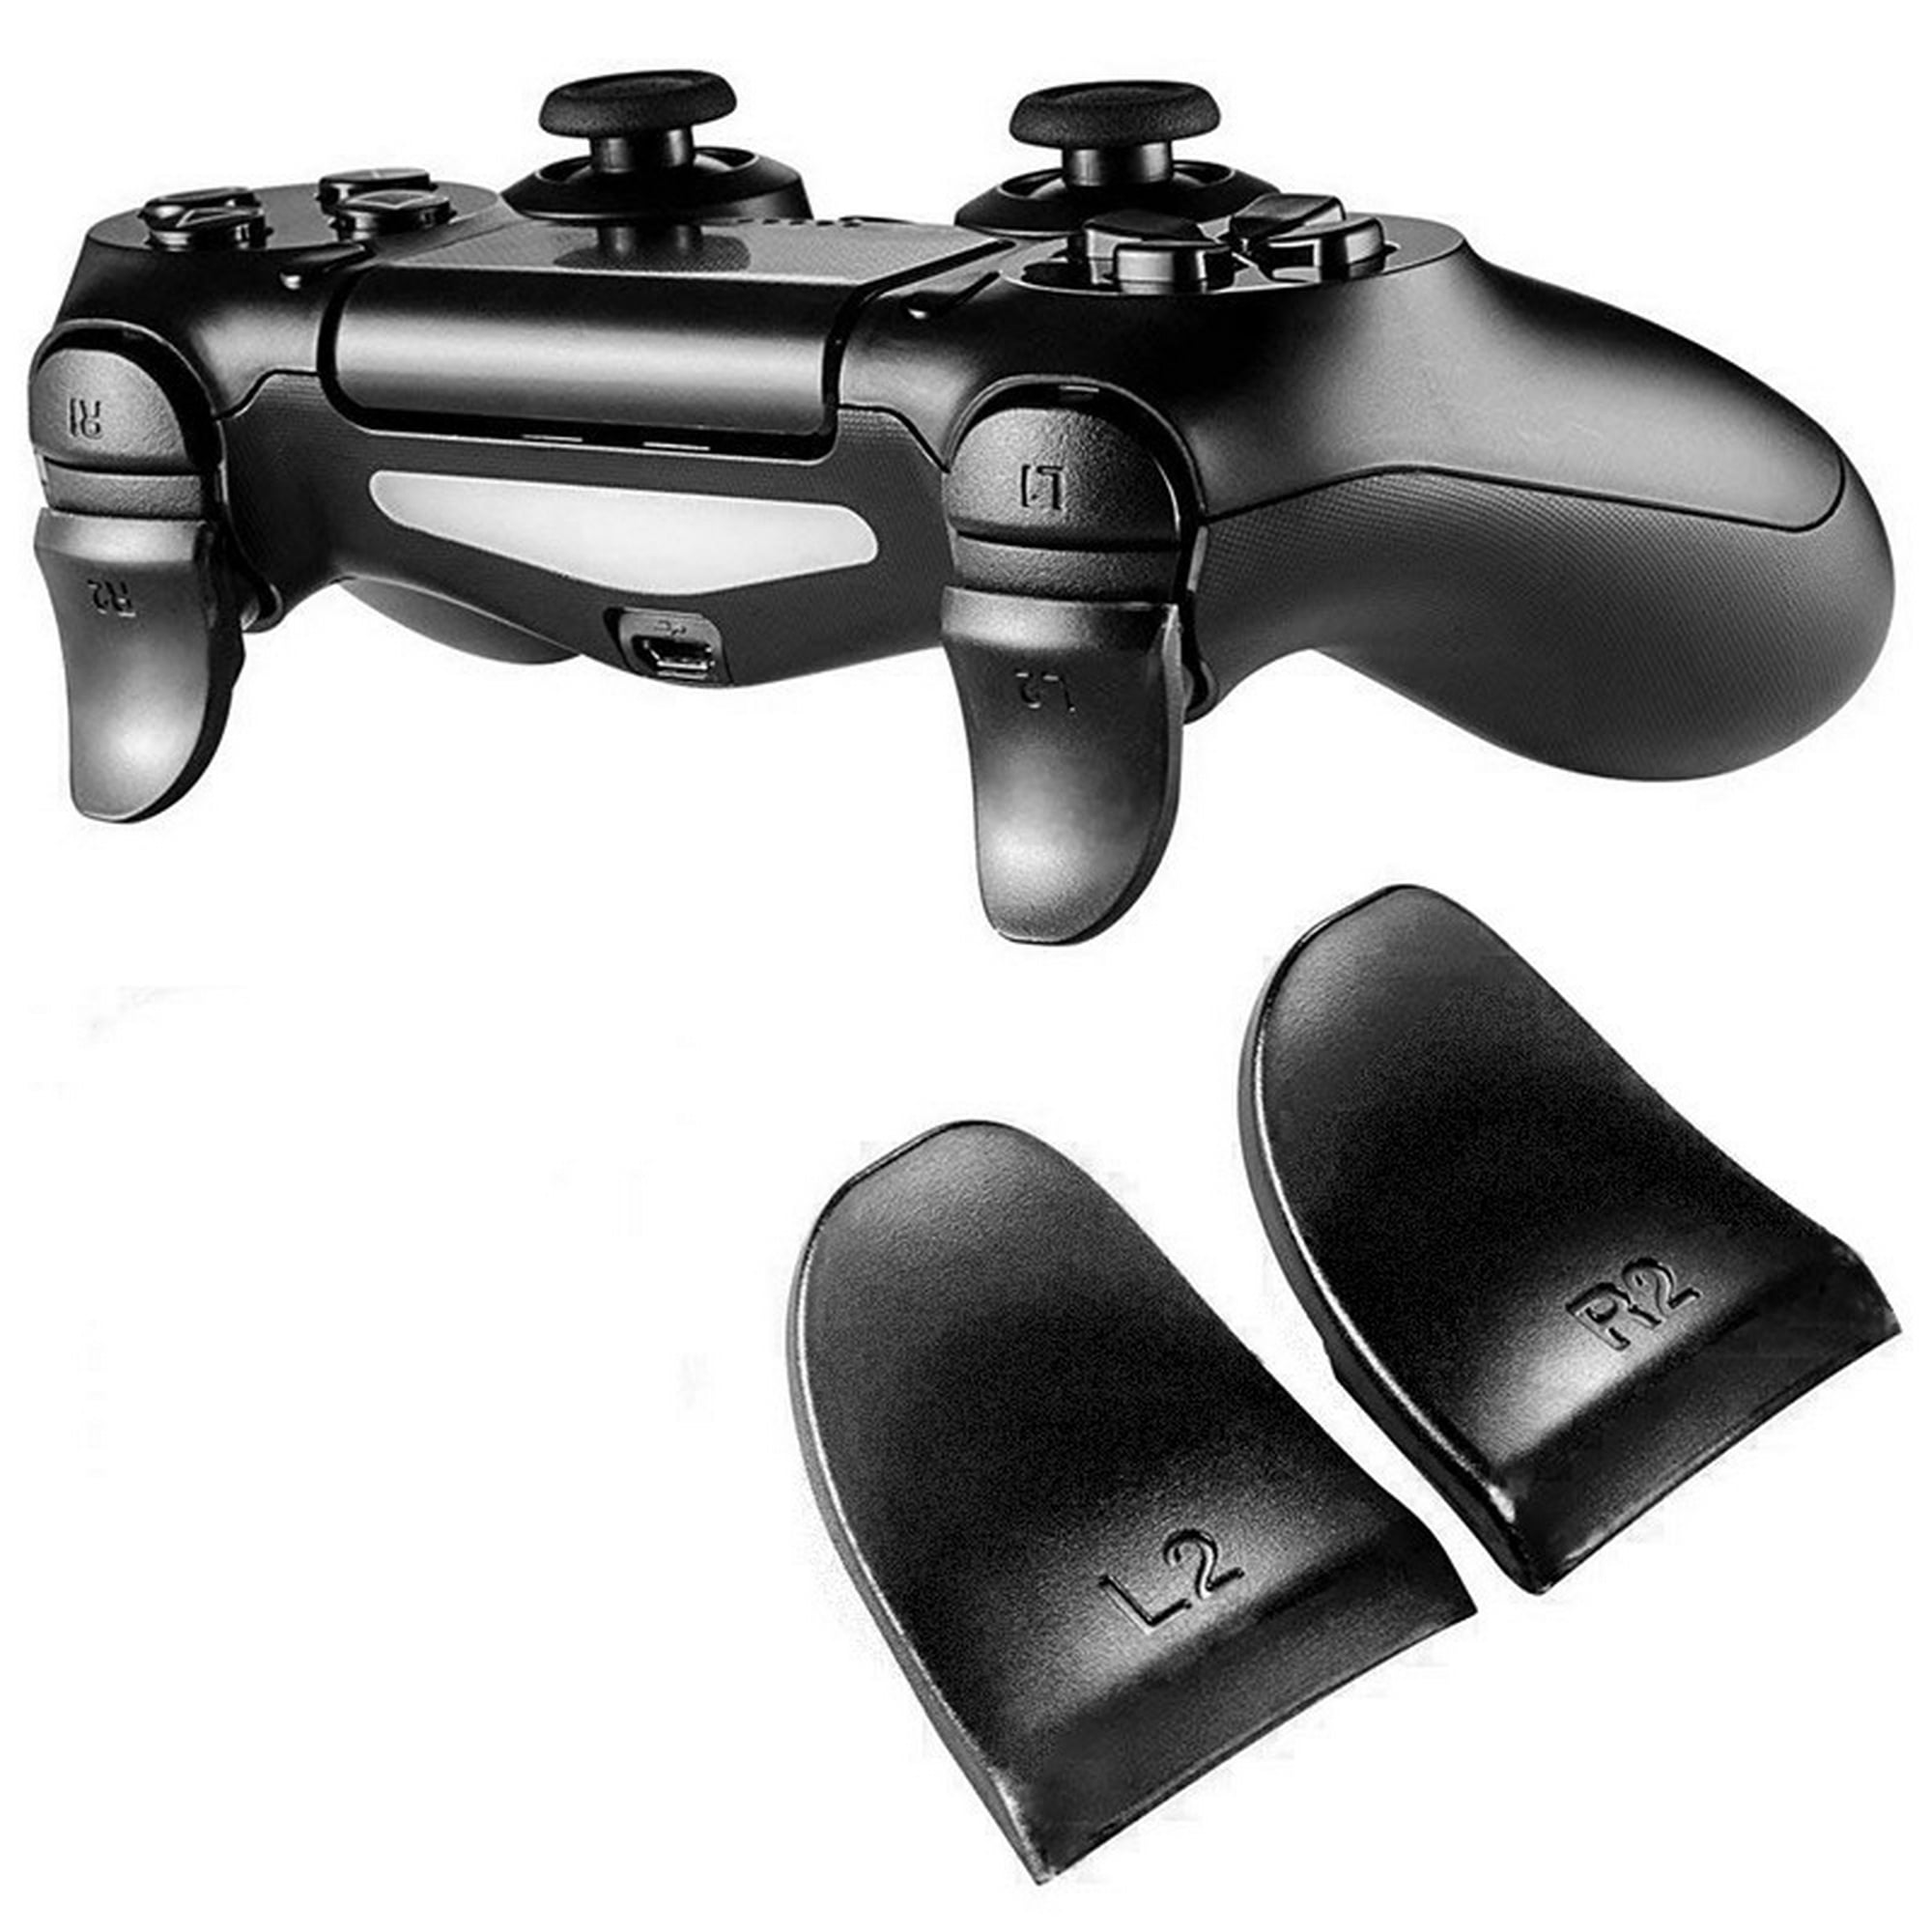 Palancas extendidas para mando de PS4, accesorios de juego, botón